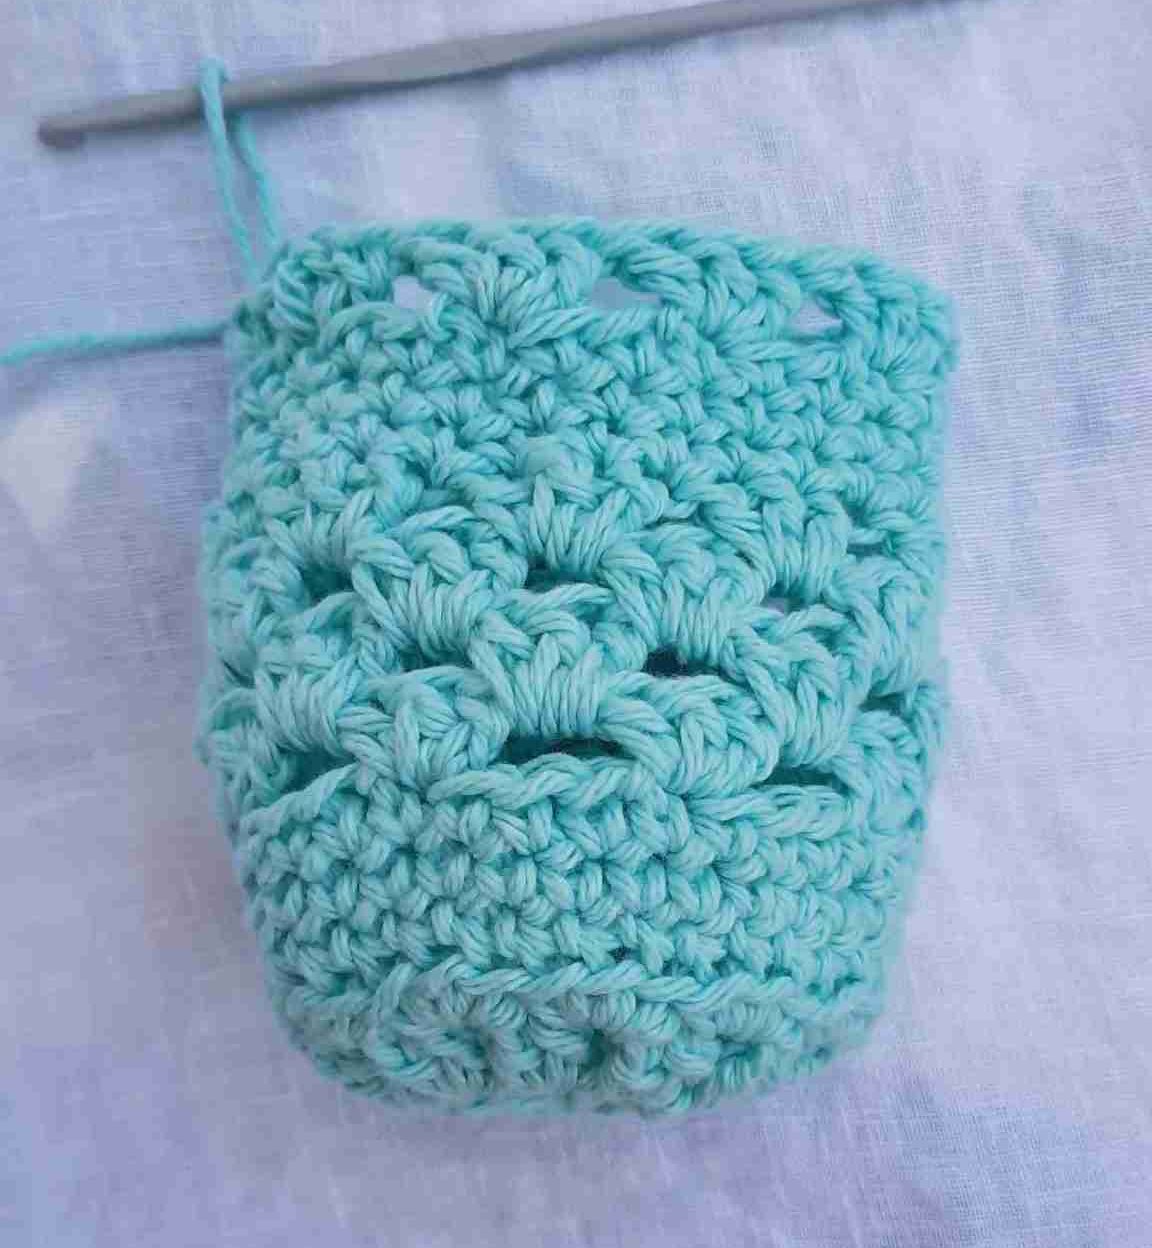 Crochet Water Bottle Holder Pattern Free